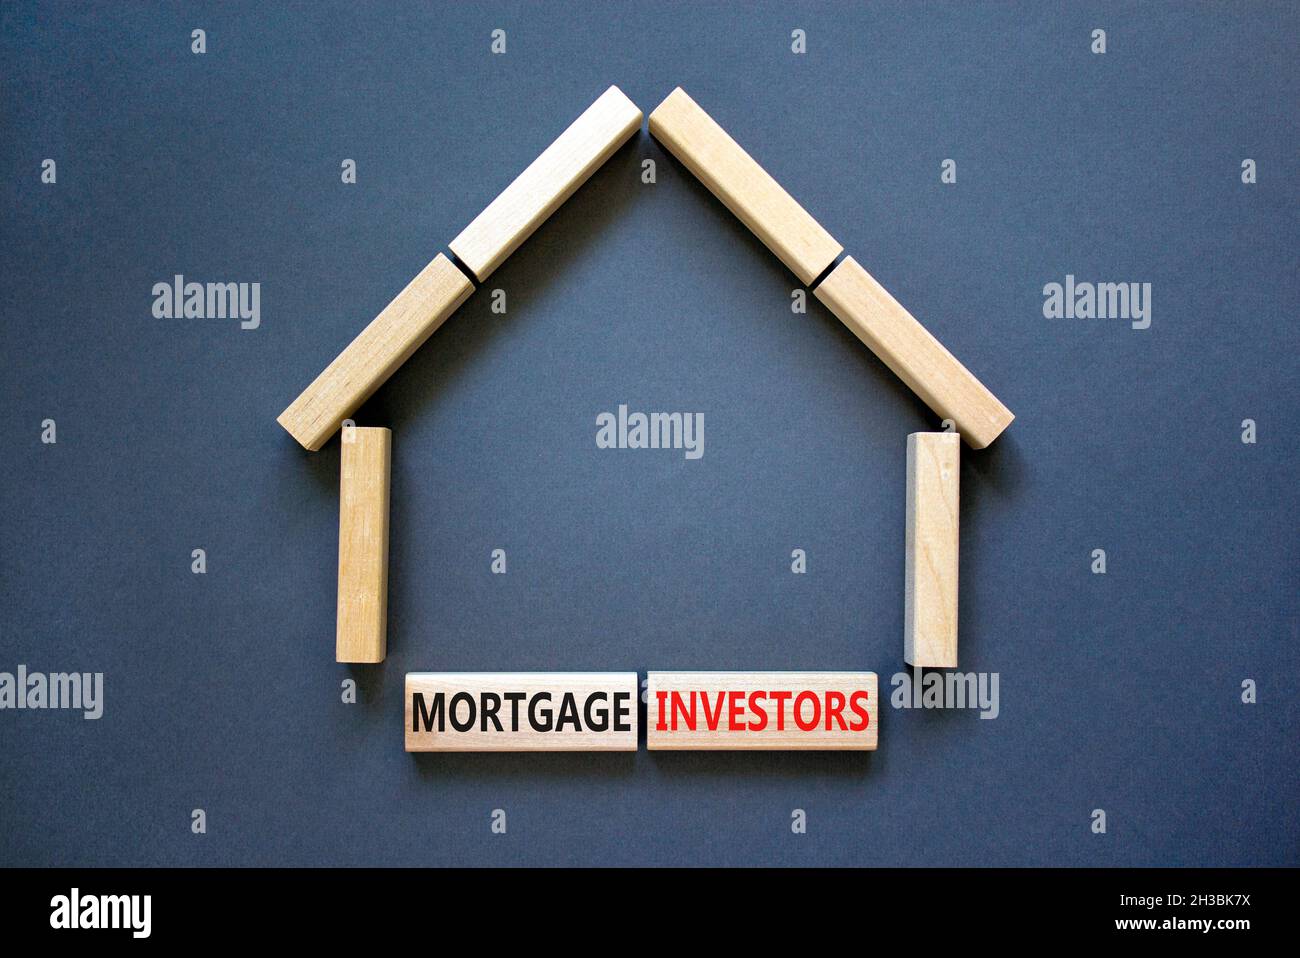 Symbole des investisseurs hypothécaires.Mots-clés 'Mortgage Investors' sur des blocs de bois près de la maison en bois miniature.Magnifique fond gris.Affaires, morg Banque D'Images